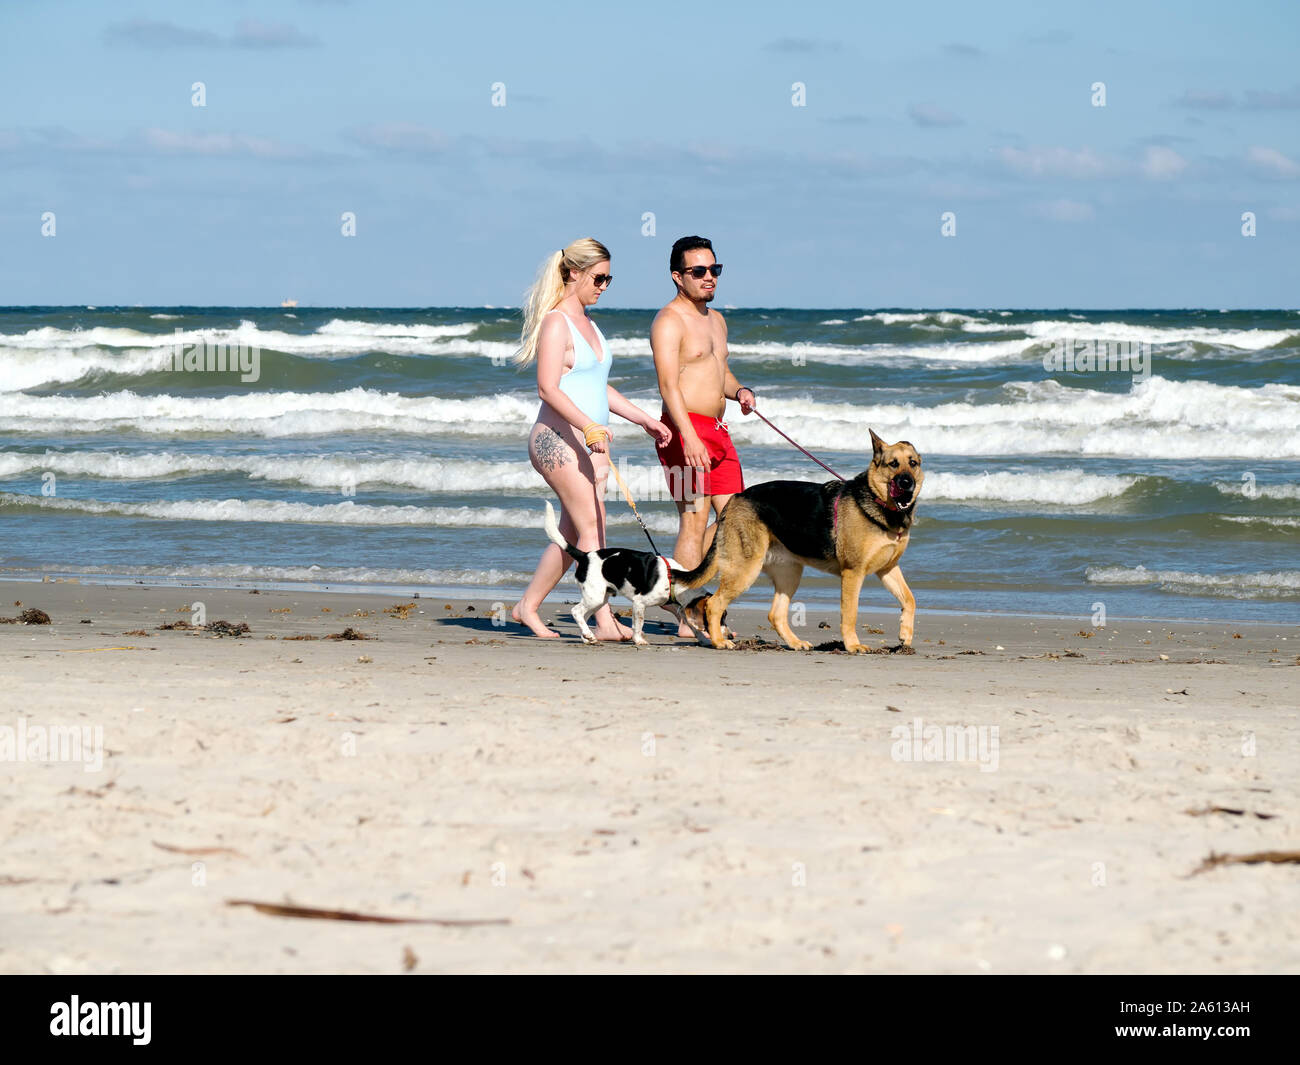 Ein paar in Badekleidung zu Fuß ihre Hunde auf einem Port Aransas, Texas USA Strand. Stockfoto